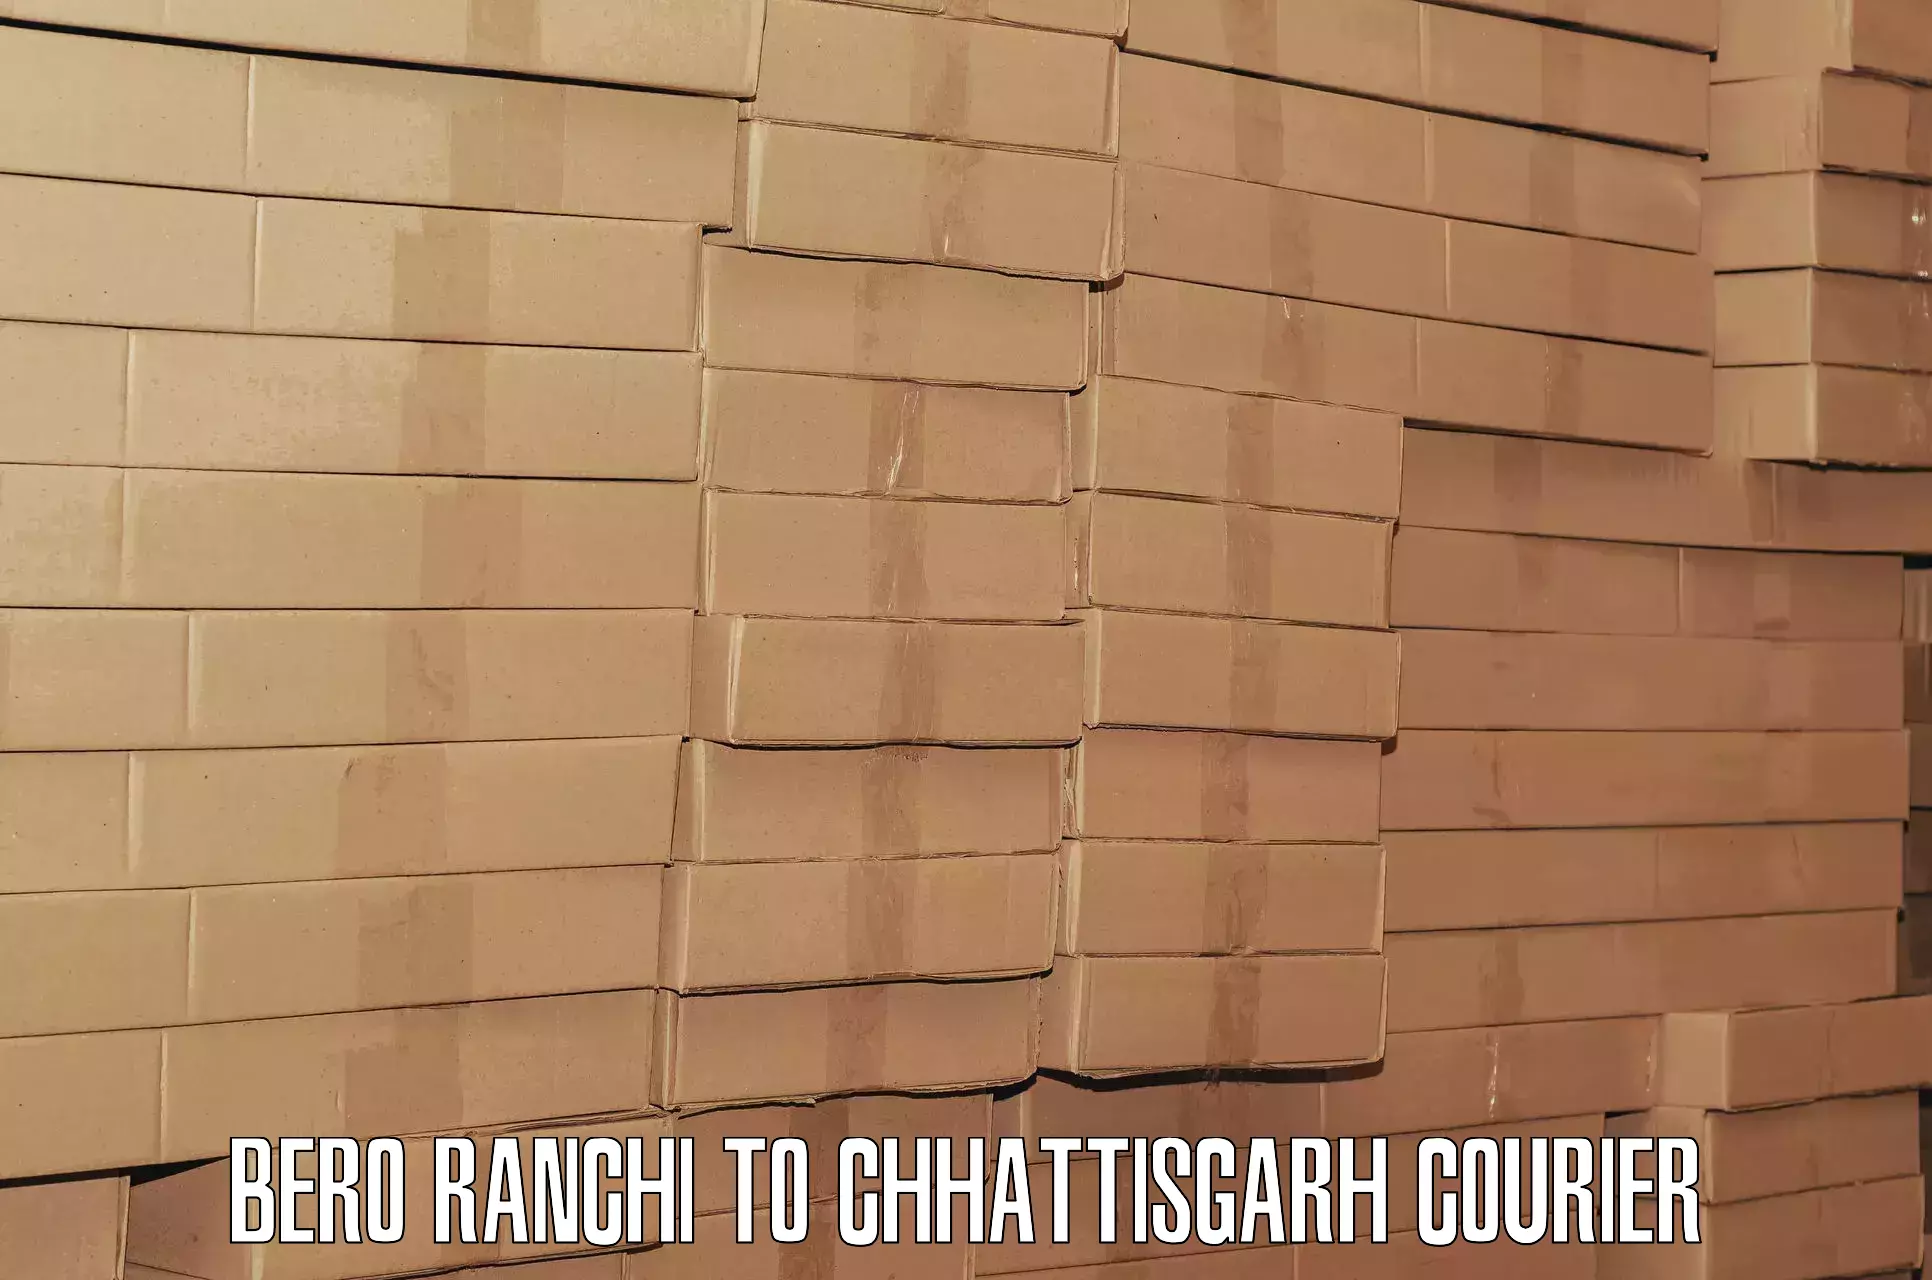 Baggage courier insights Bero Ranchi to Chhattisgarh